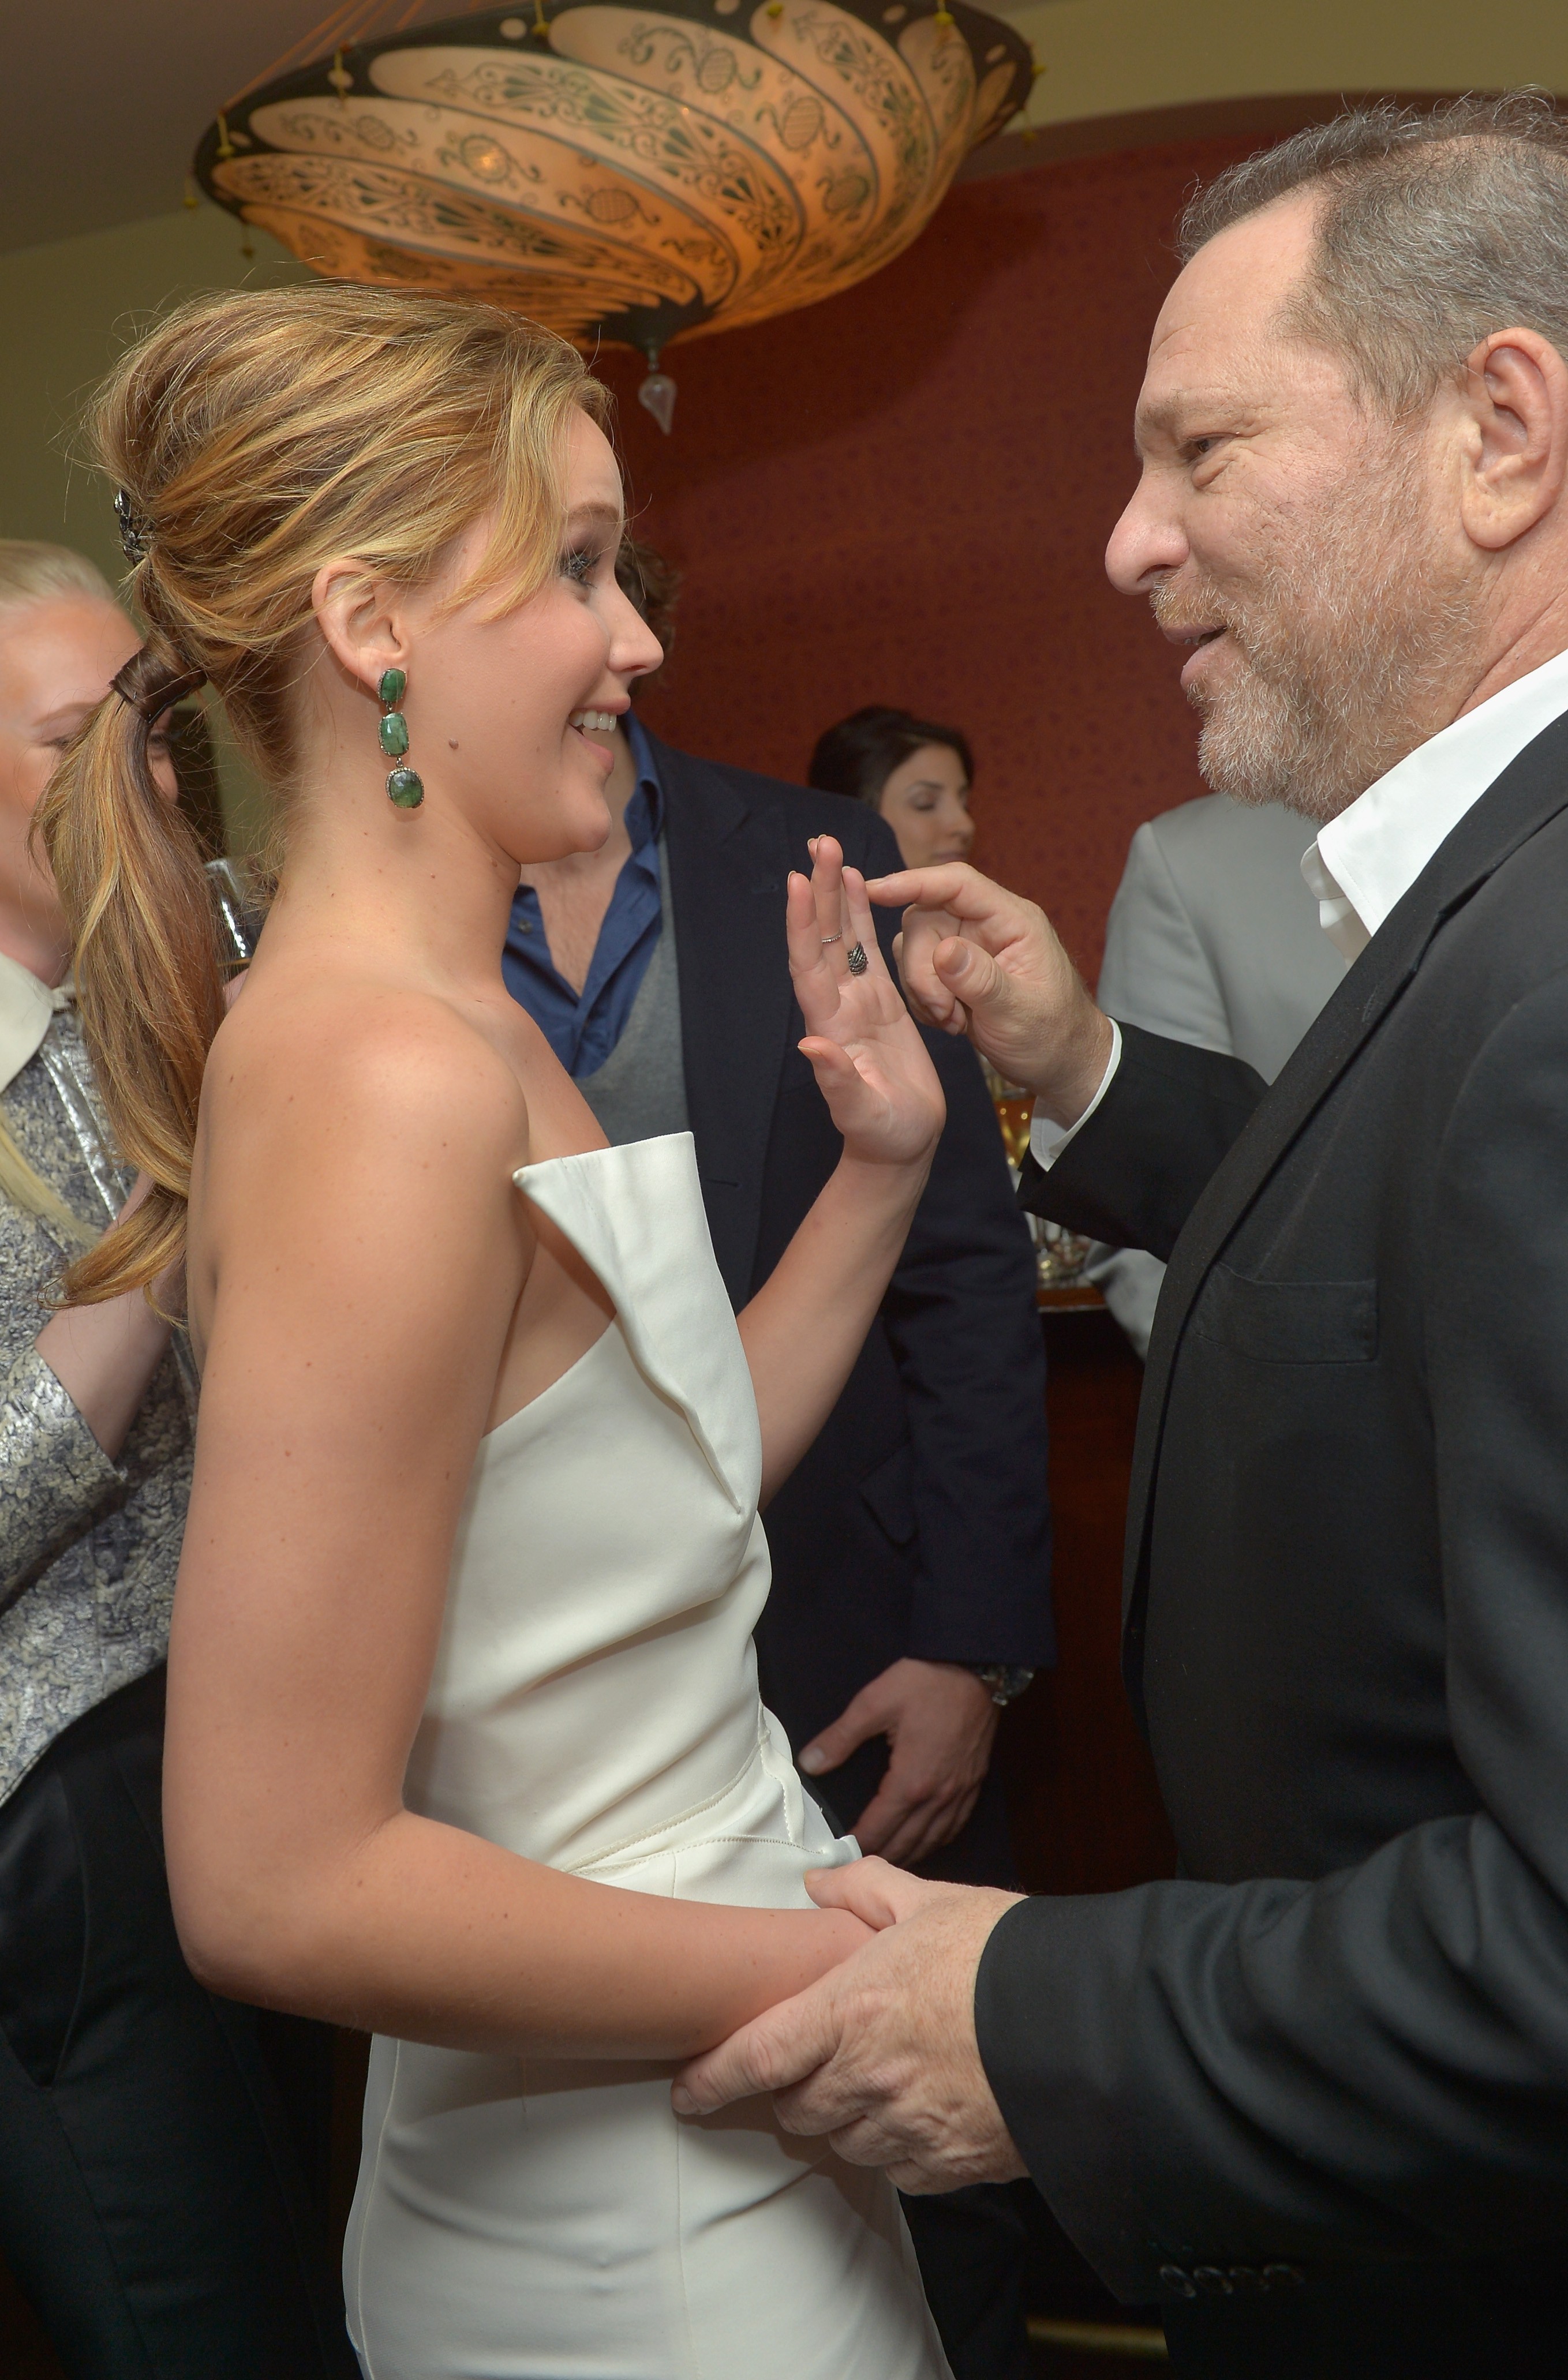 A atriz Jennifer Lawrence e o produtor Harvey Weinstein em um evento em Hollywood no ano de 2013 (Foto: Getty Images)